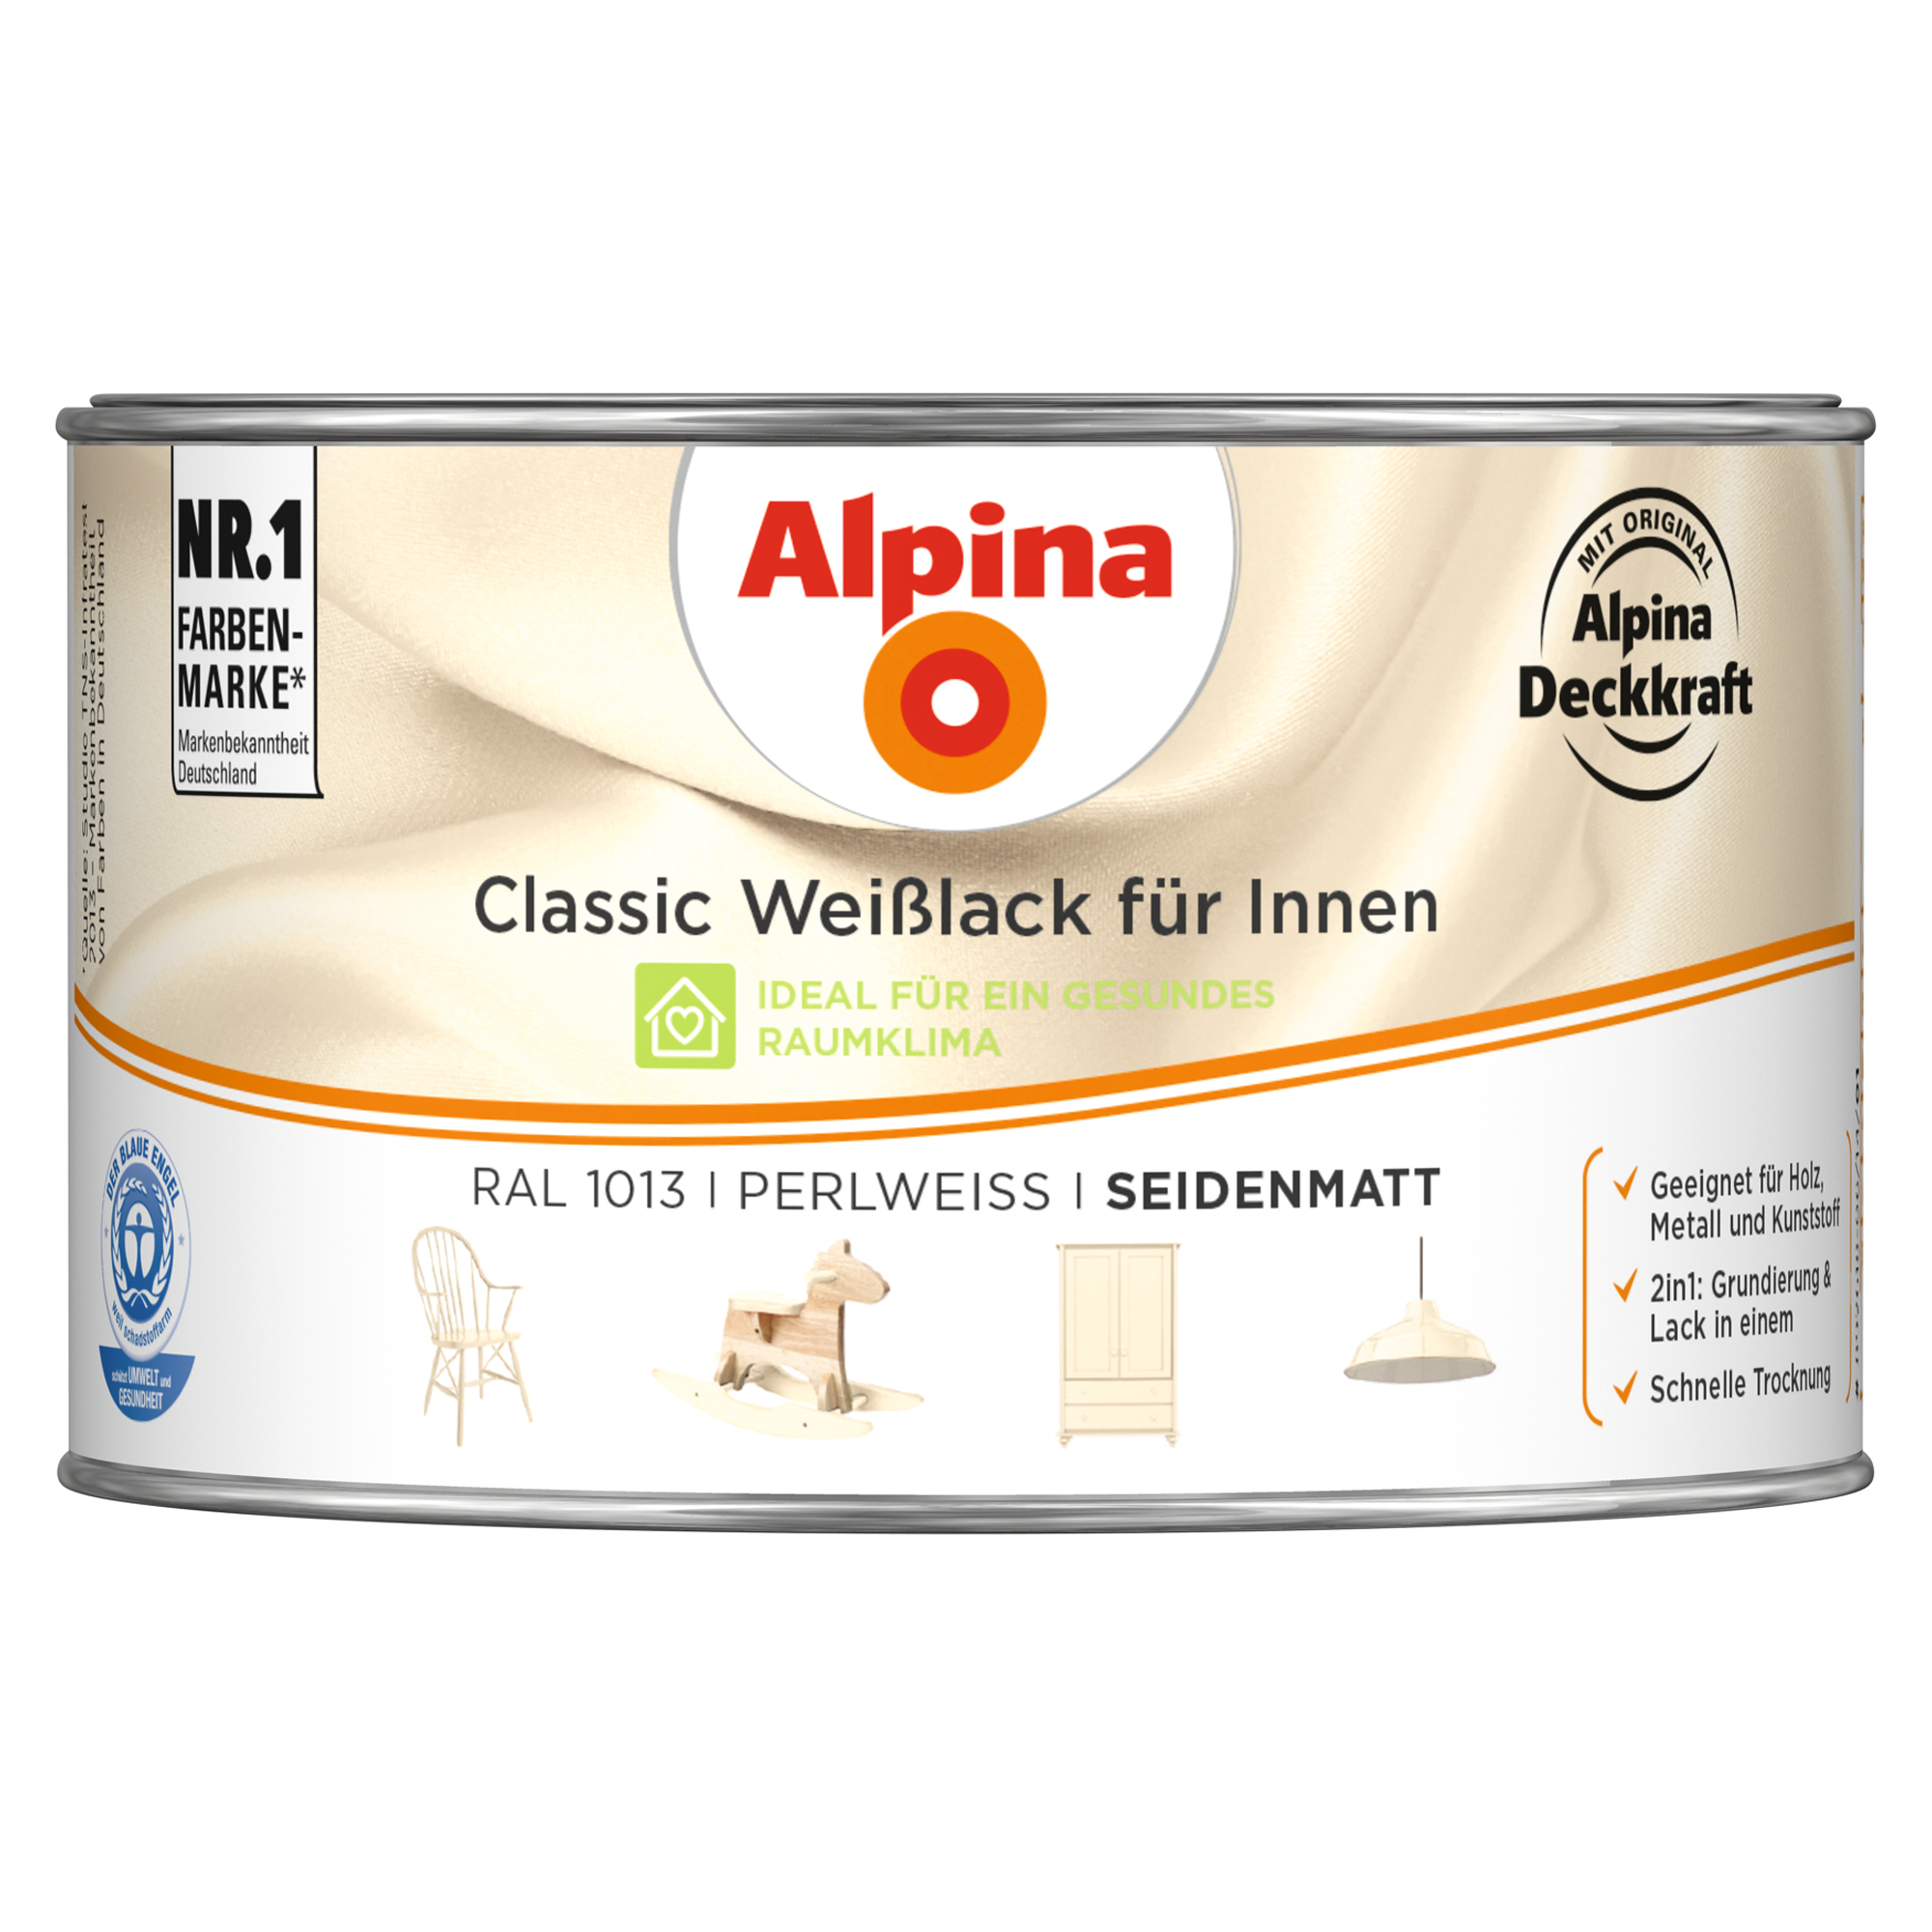 Weißlack für Innen perlweiß seidenmatt 300 ml + product picture